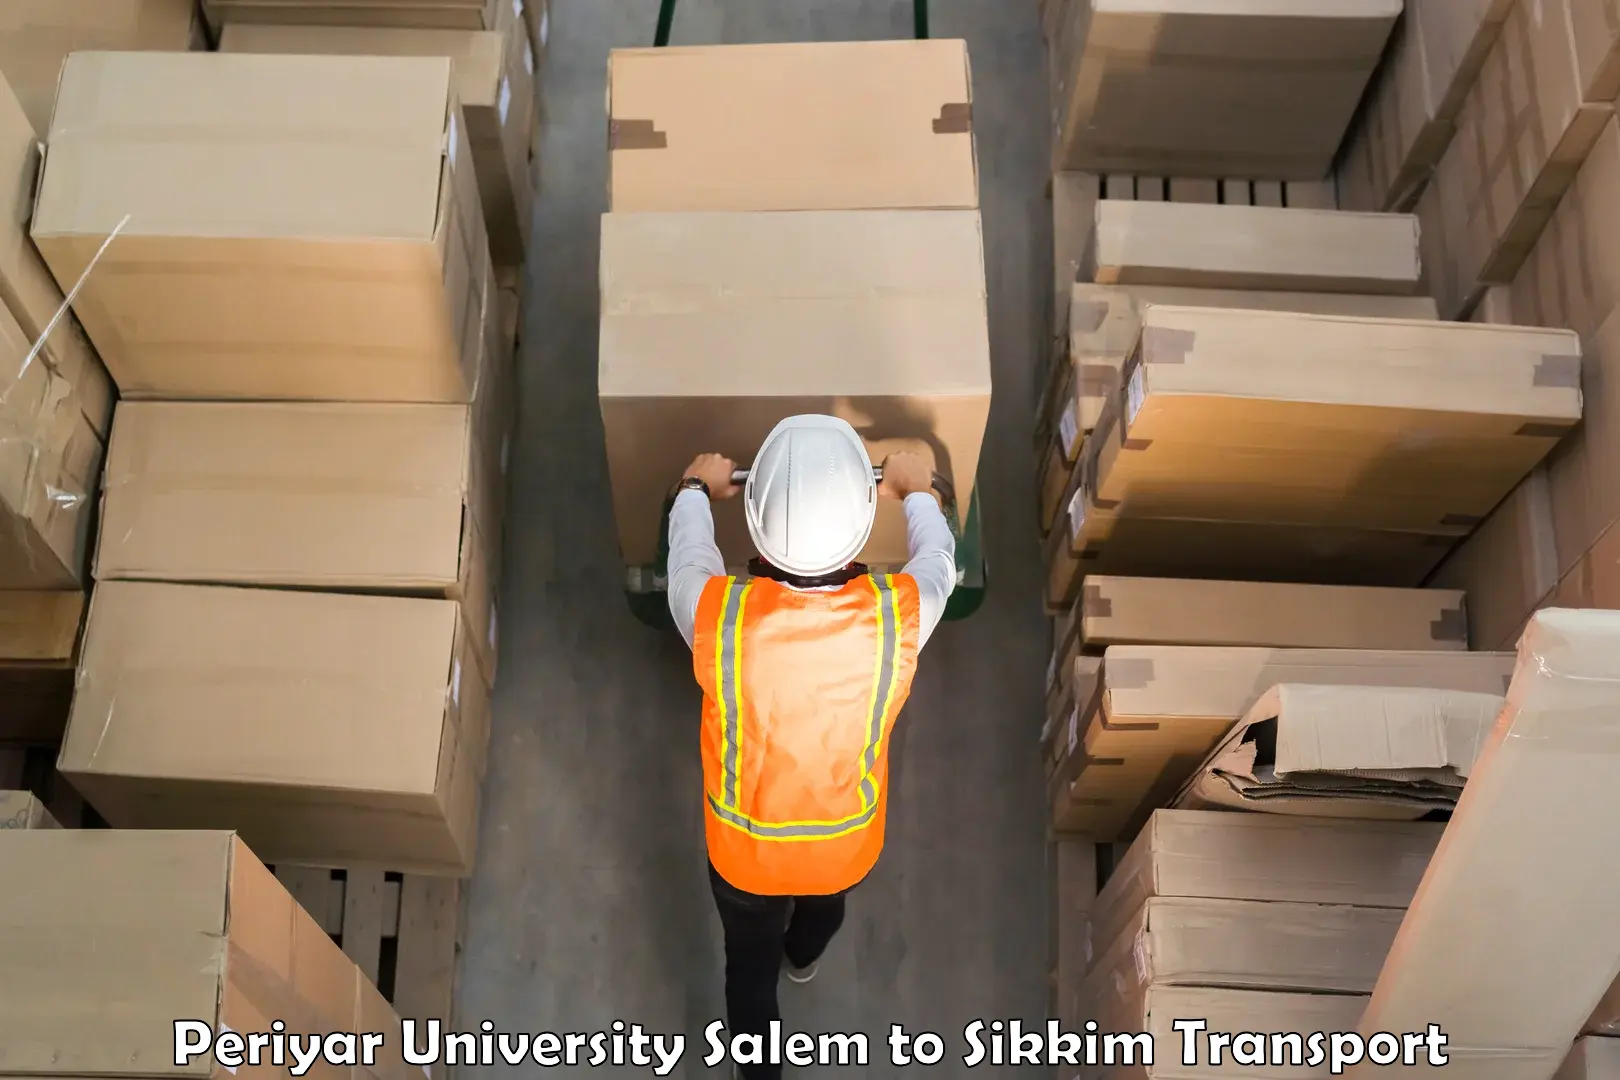 Delivery service Periyar University Salem to Ravangla